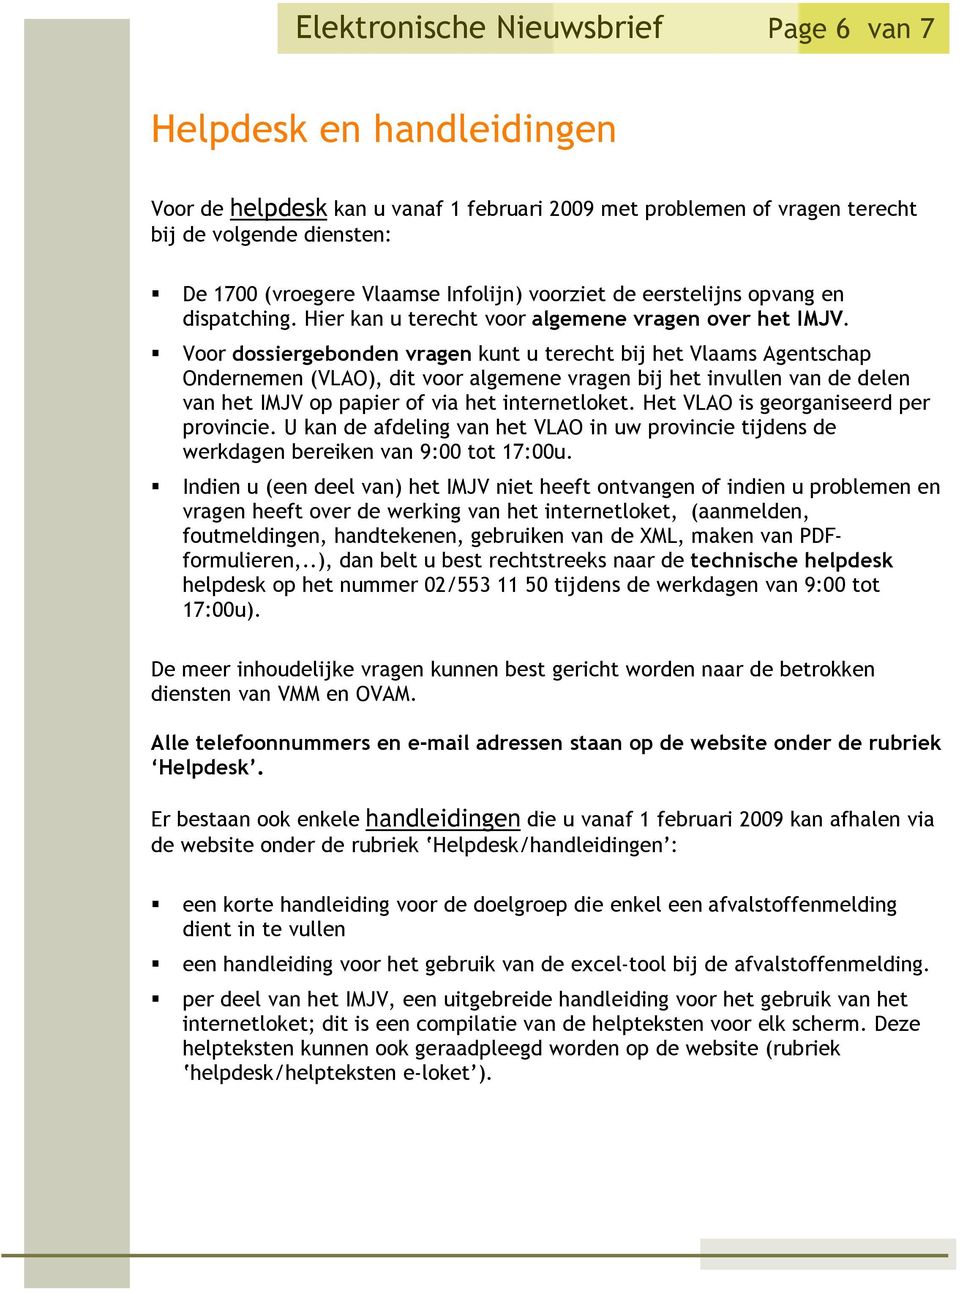 Voor dossiergebonden vragen kunt u terecht bij het Vlaams Agentschap Ondernemen (VLAO), dit voor algemene vragen bij het invullen van de delen van het op papier of via het internetloket.